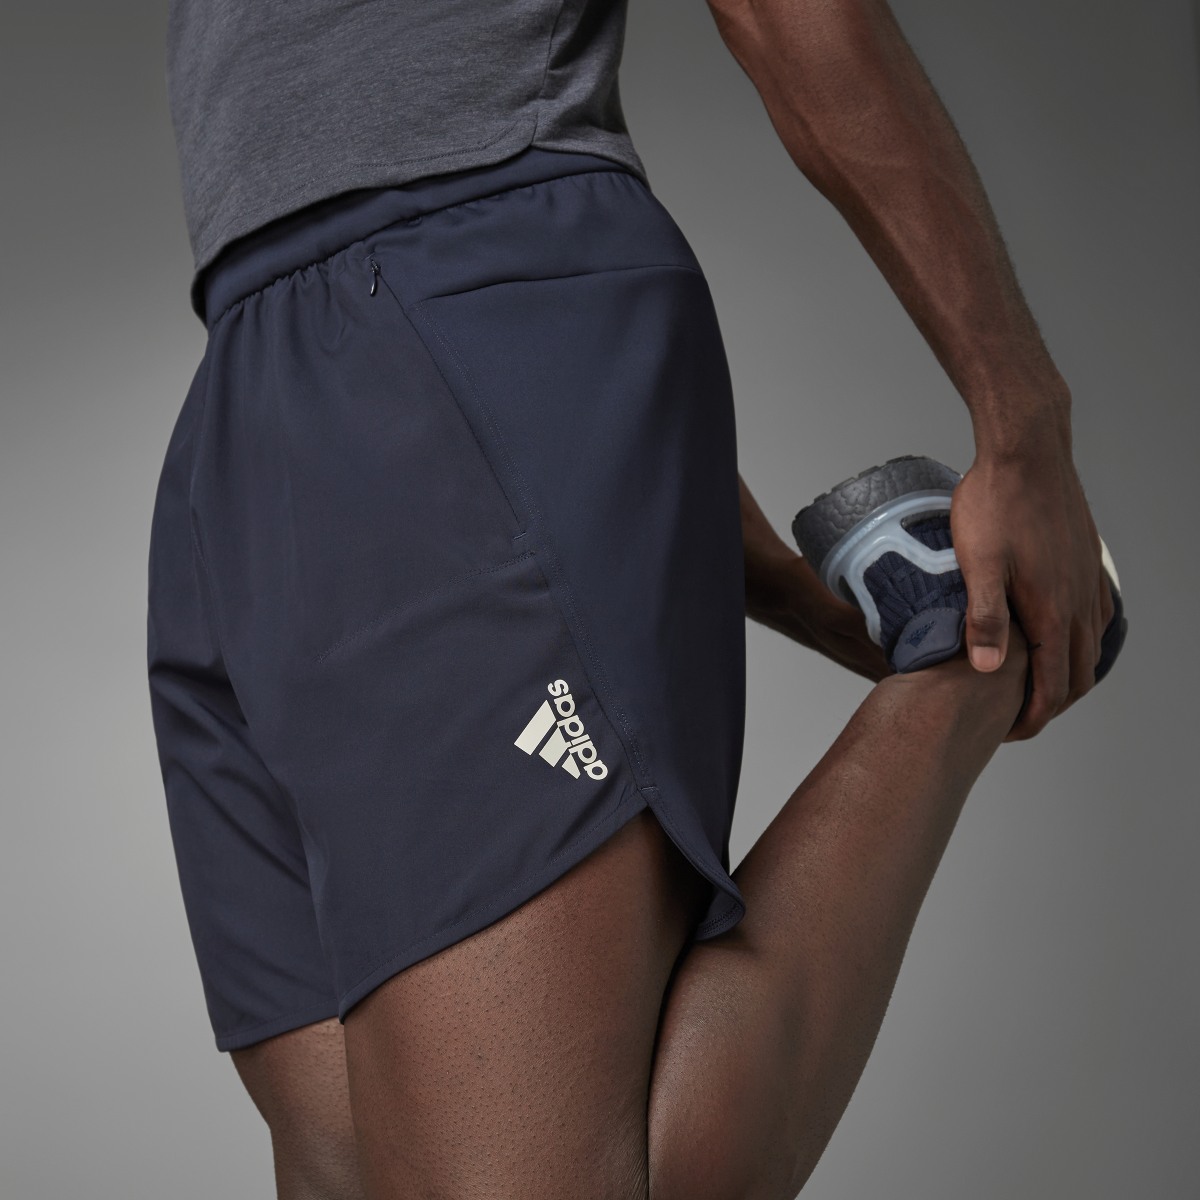 Adidas Designed for Training Shorts. 6